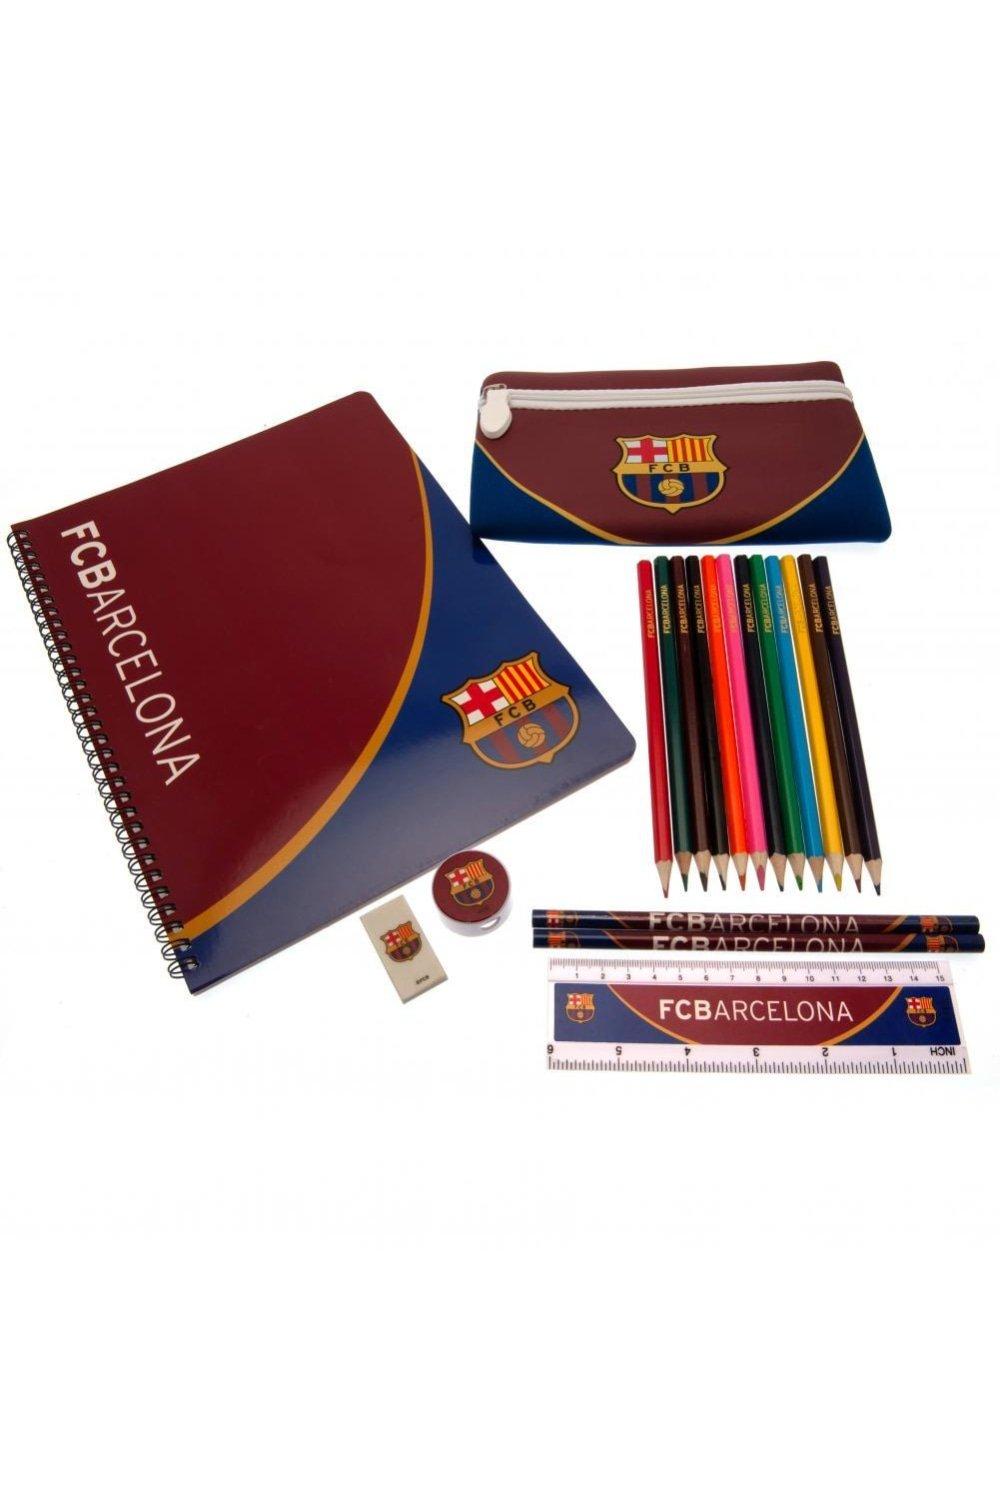 Набор школьных принадлежностей FC Barcelona, красный цветные карандаши замок в карт промоупаковке 12 шт 3 двухцветных карандаша точилка